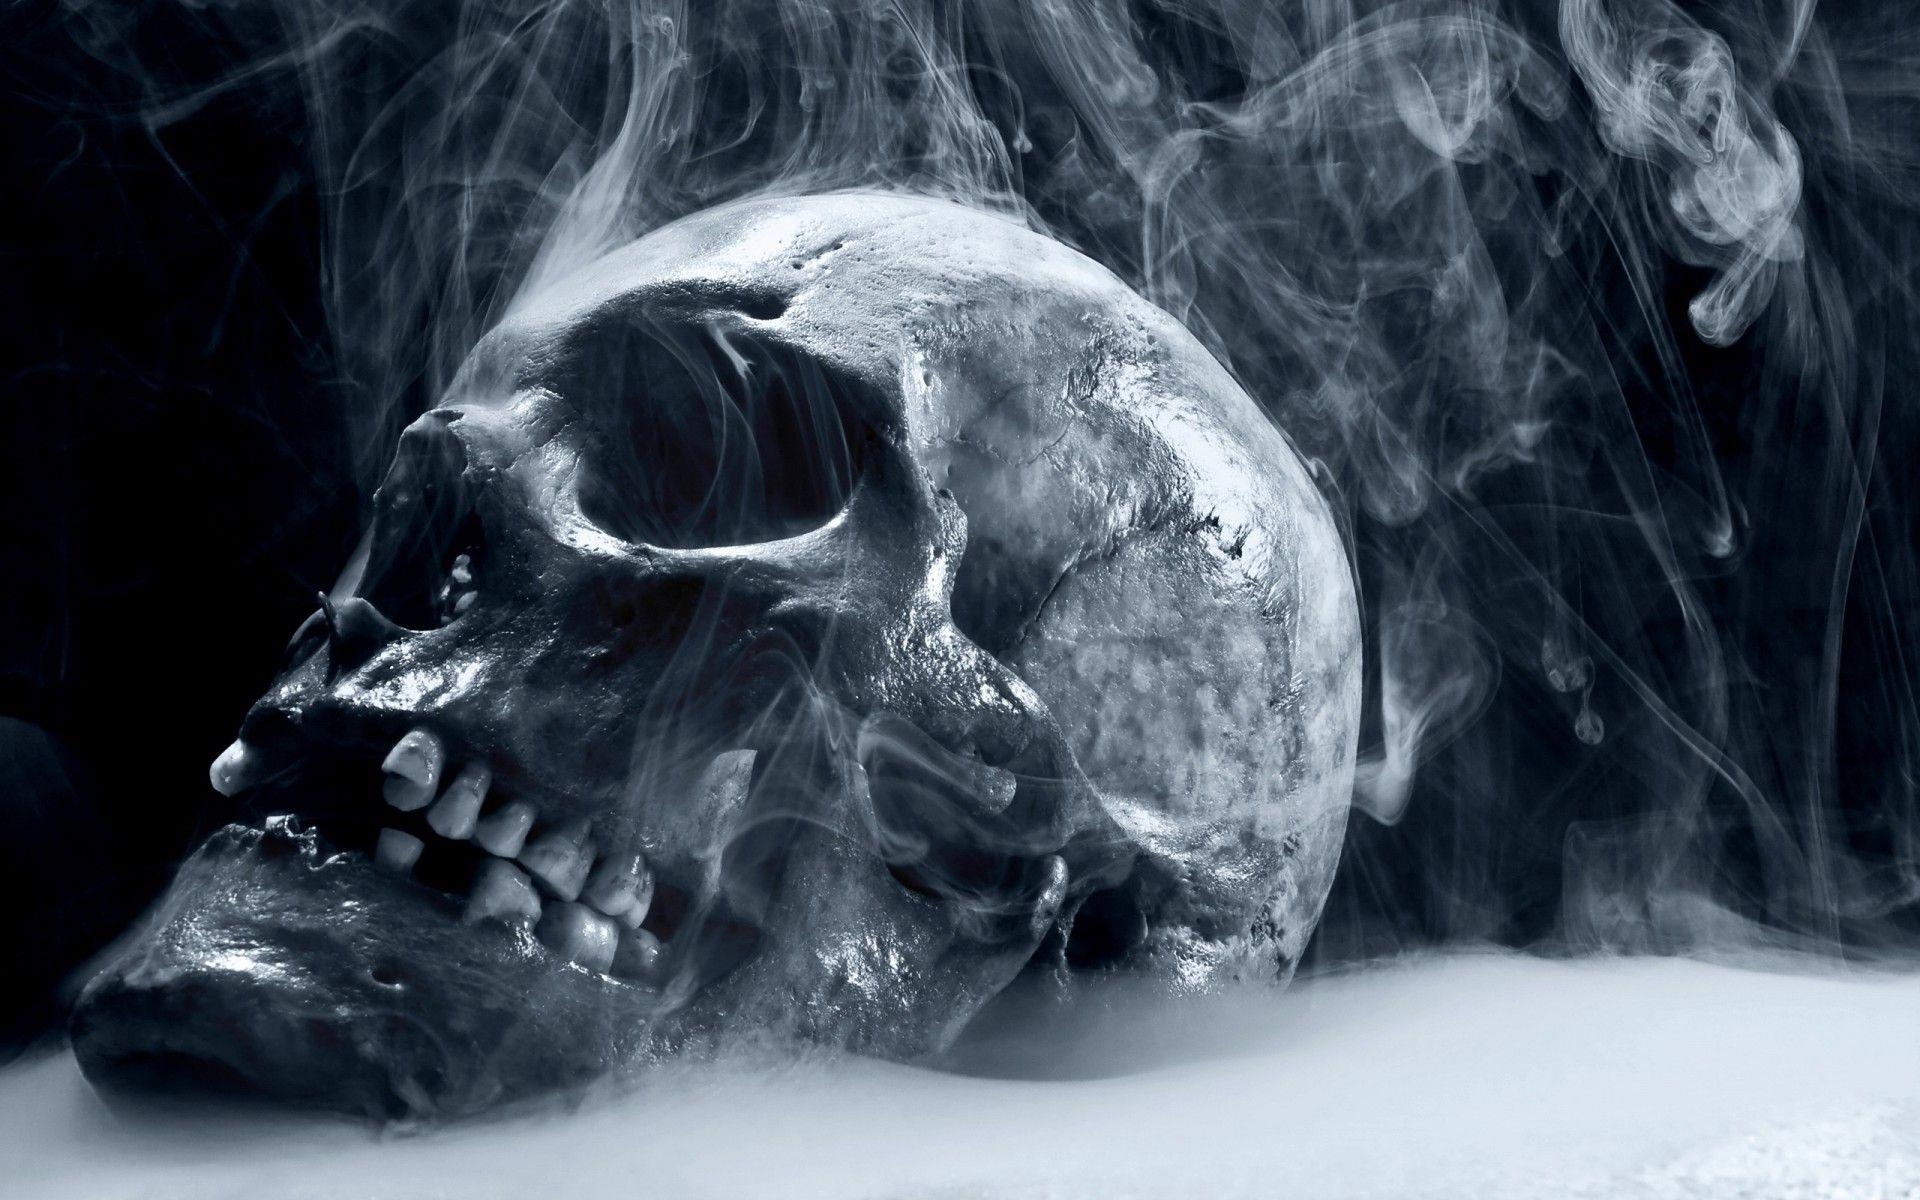 Dangerous HD Wallpaper Smoke Skull